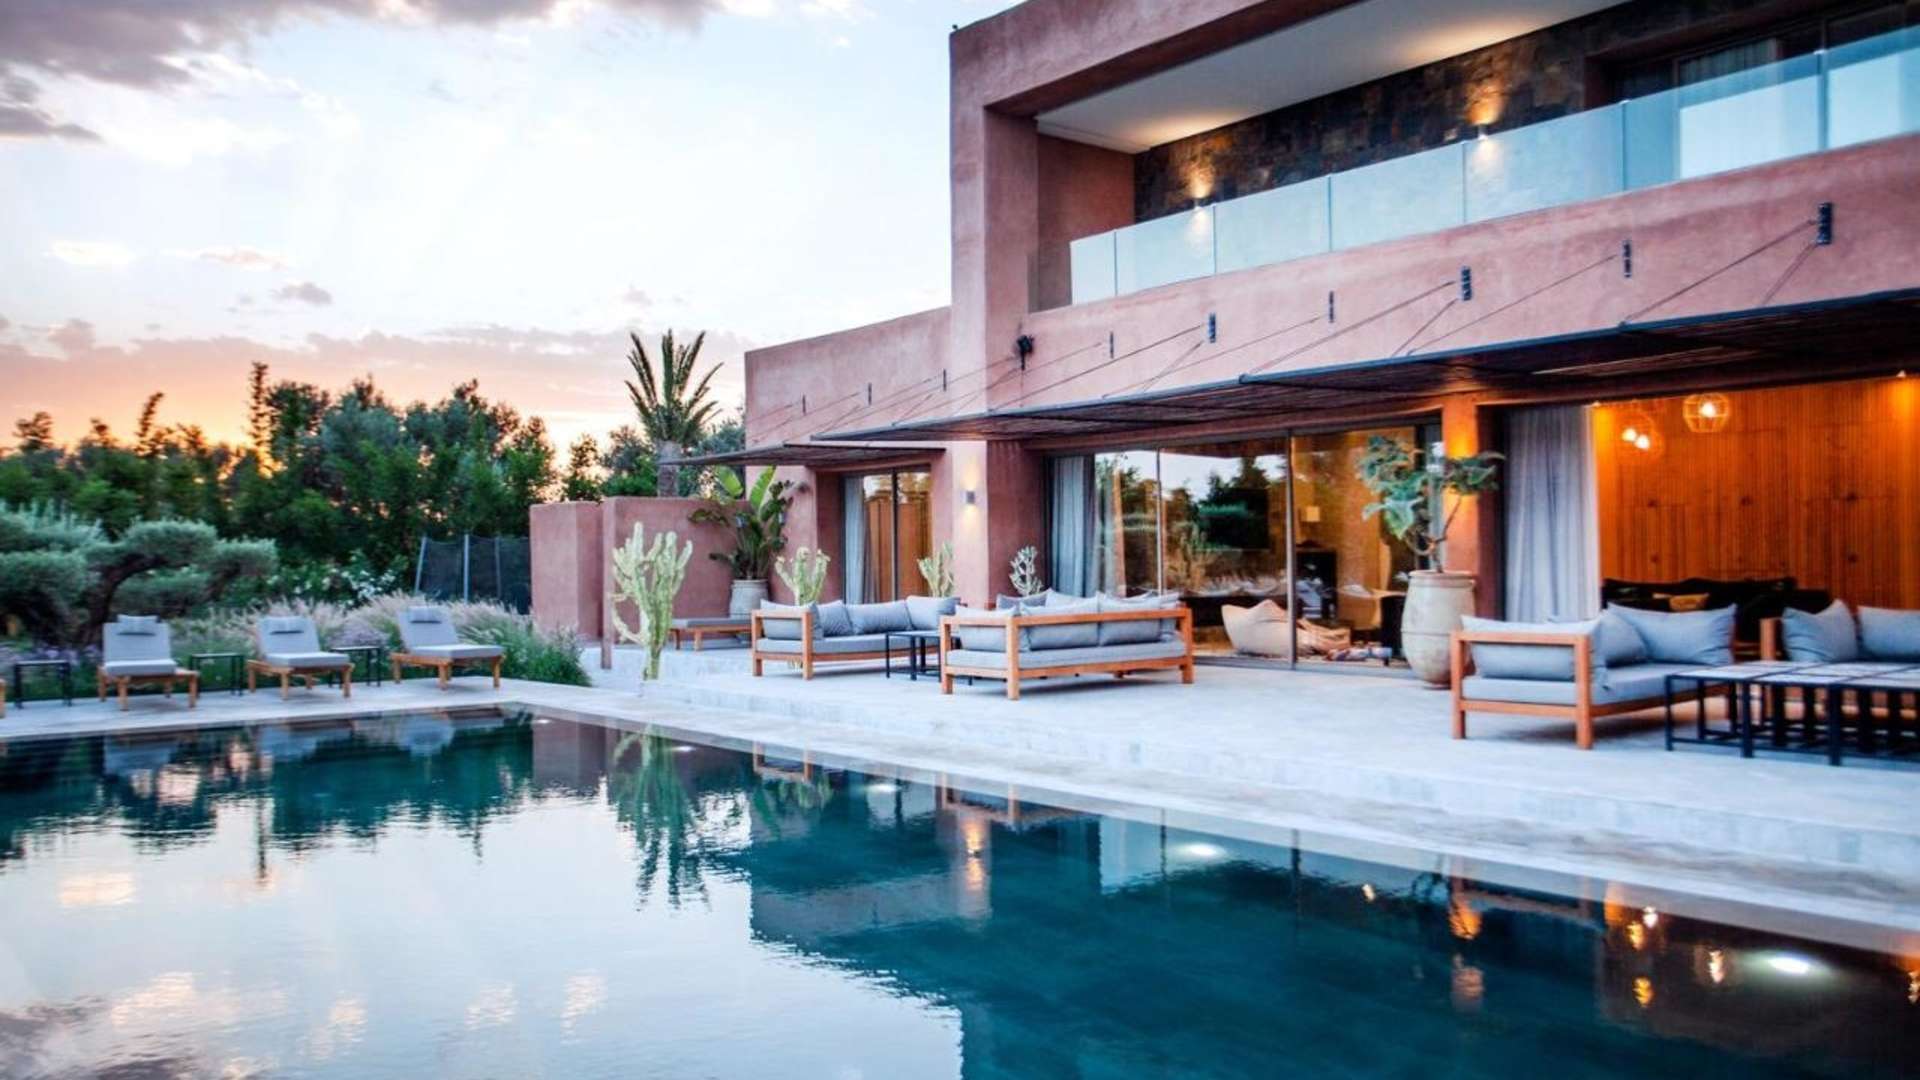 Location de vacances,Villa,Villa de luxe 7 suites avec salle de sport, Hammam, bar et spa,Marrakech,Route de Fès